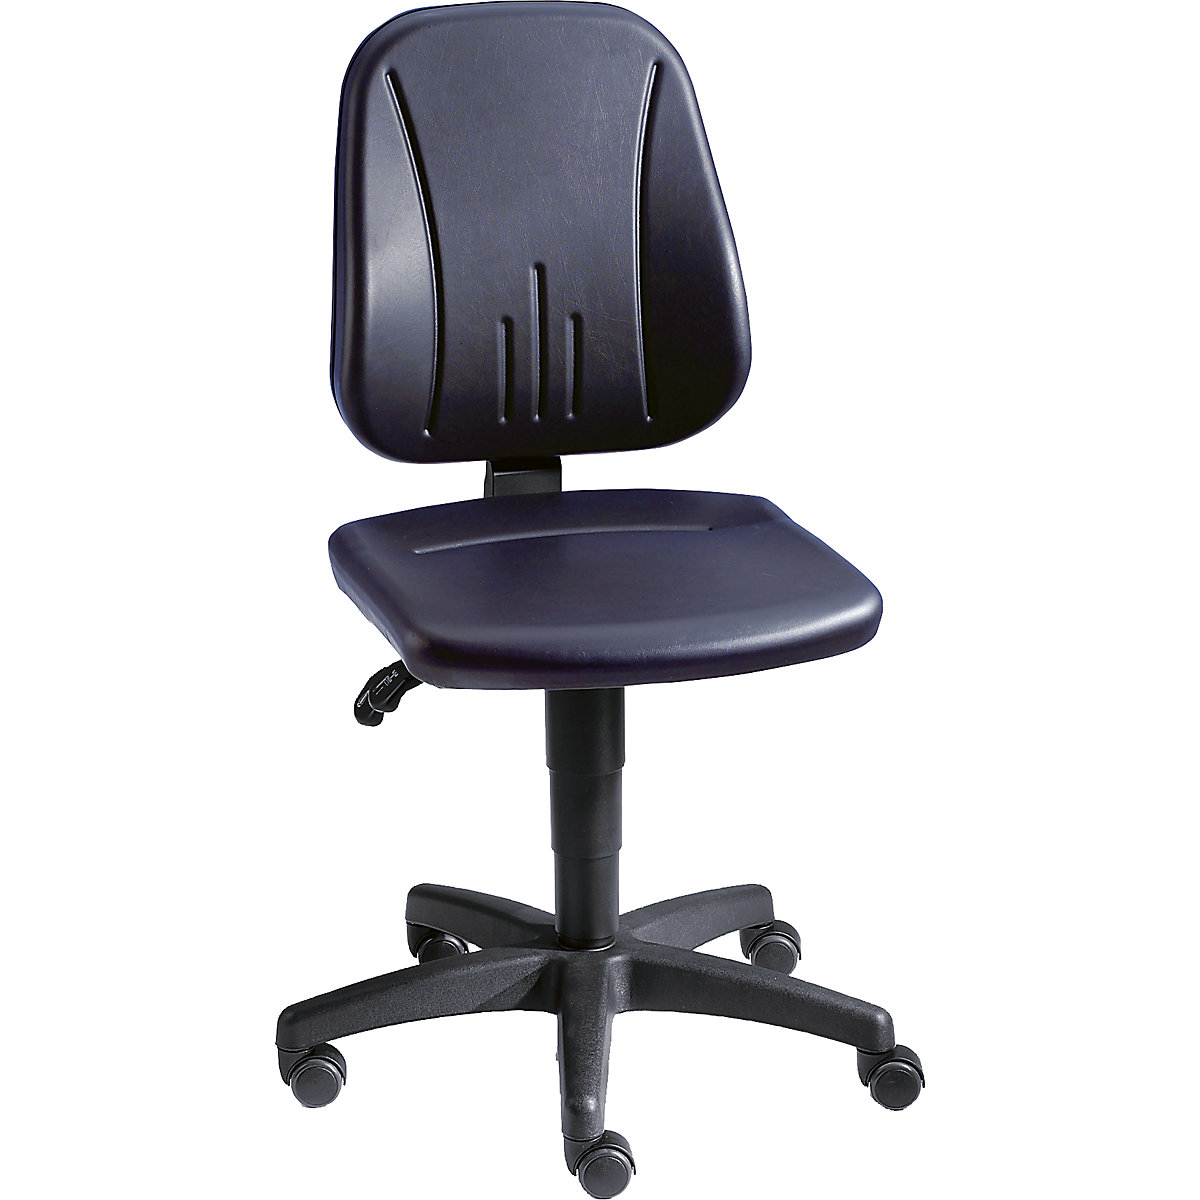 Pracovní otočná židle – bimos, s přestavováním výšky plynovým pístem, koženkový potah, černá, s kolečky-20